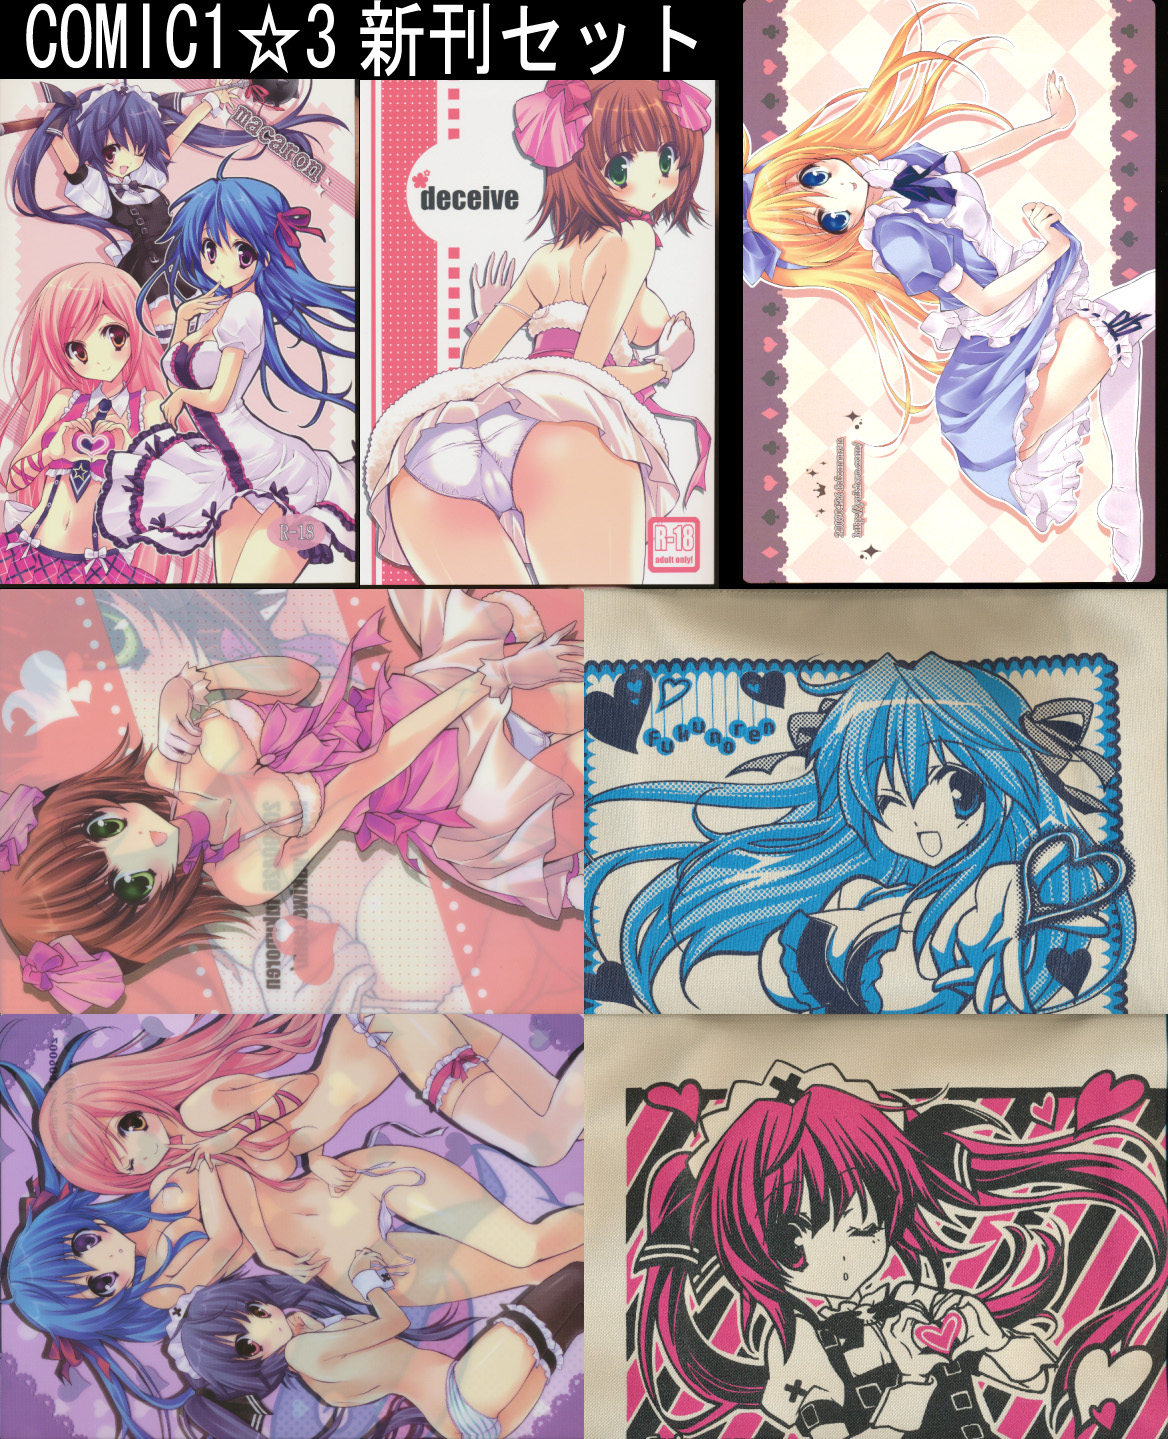 セット)COMIC1☆3 2冊+クリアファイル2枚+A4カード+袋2枚